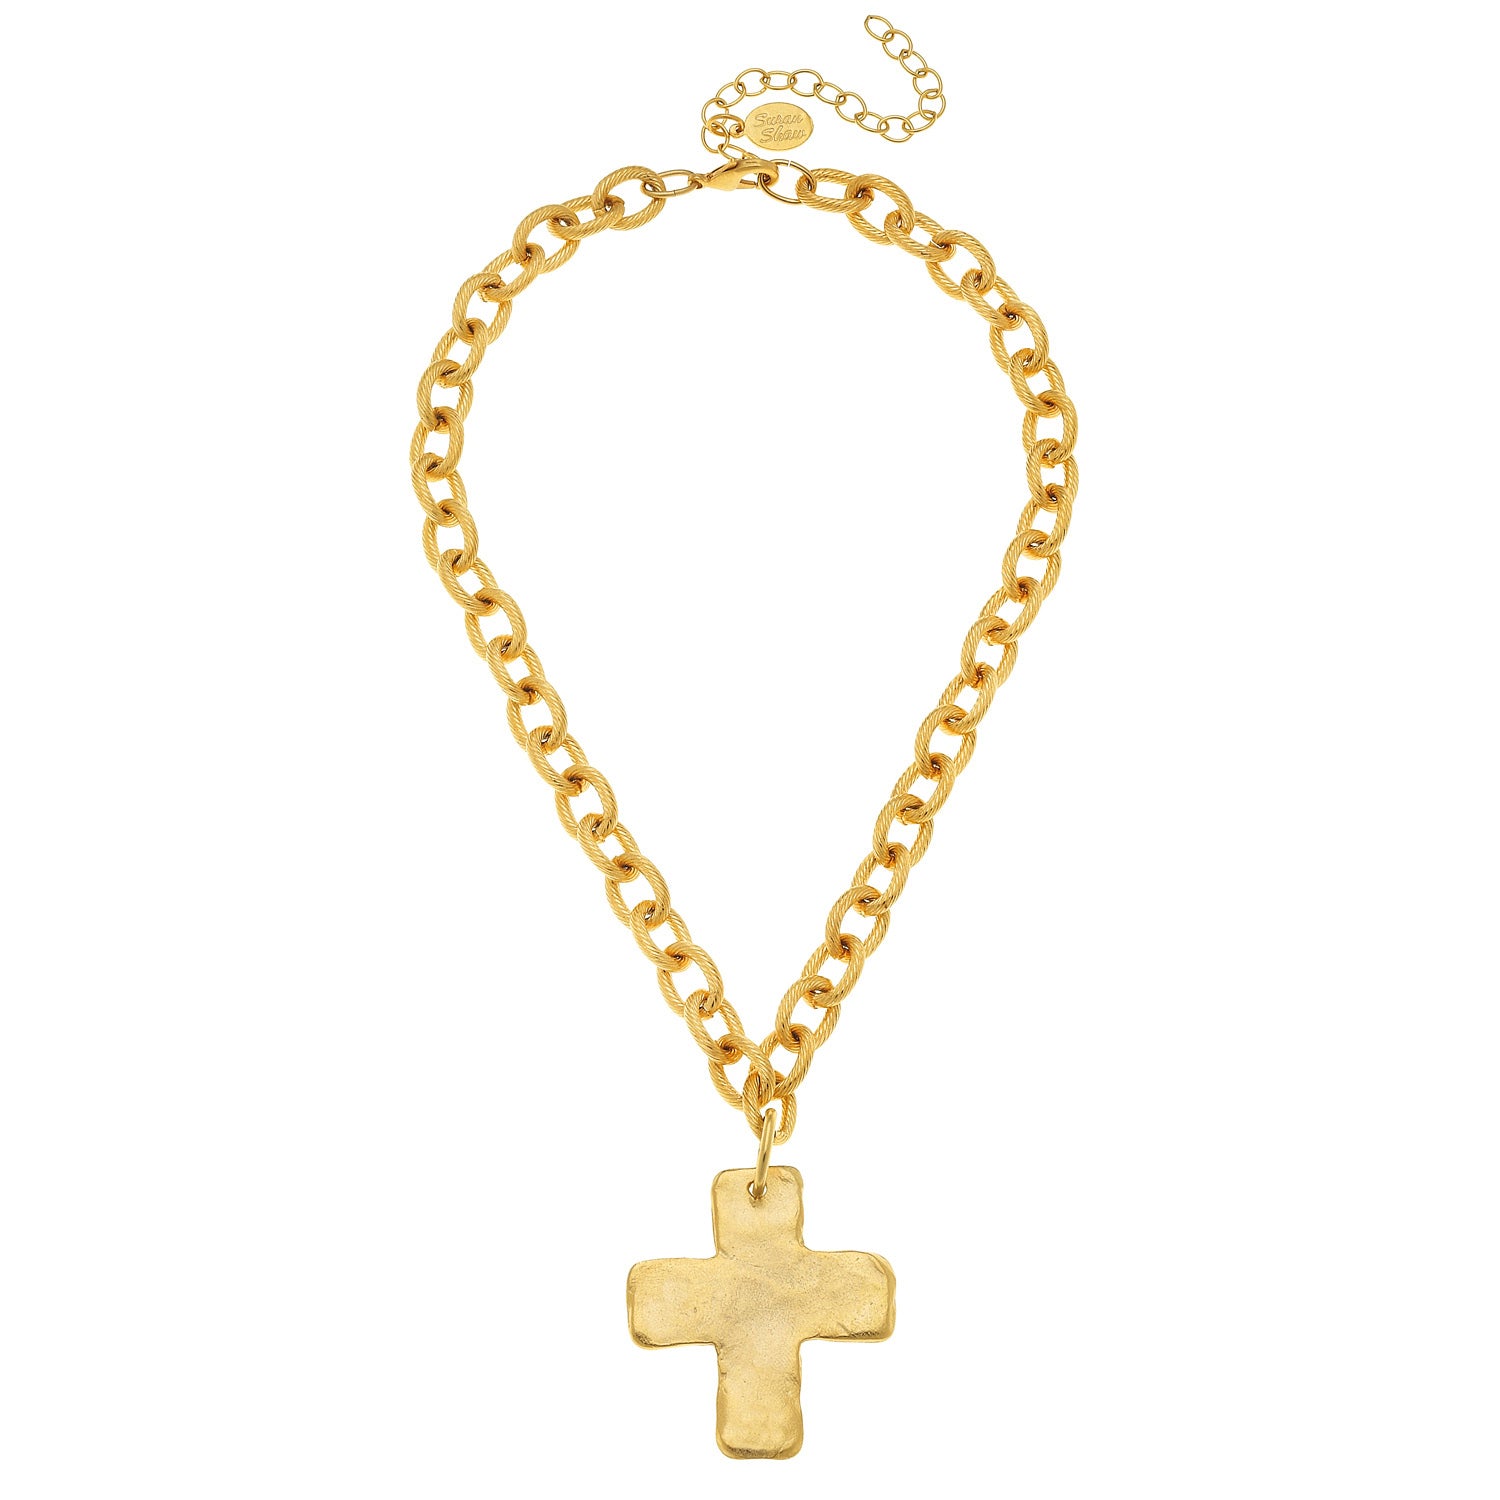 Large Diamond Cross Necklace – San Antonio Jewelry